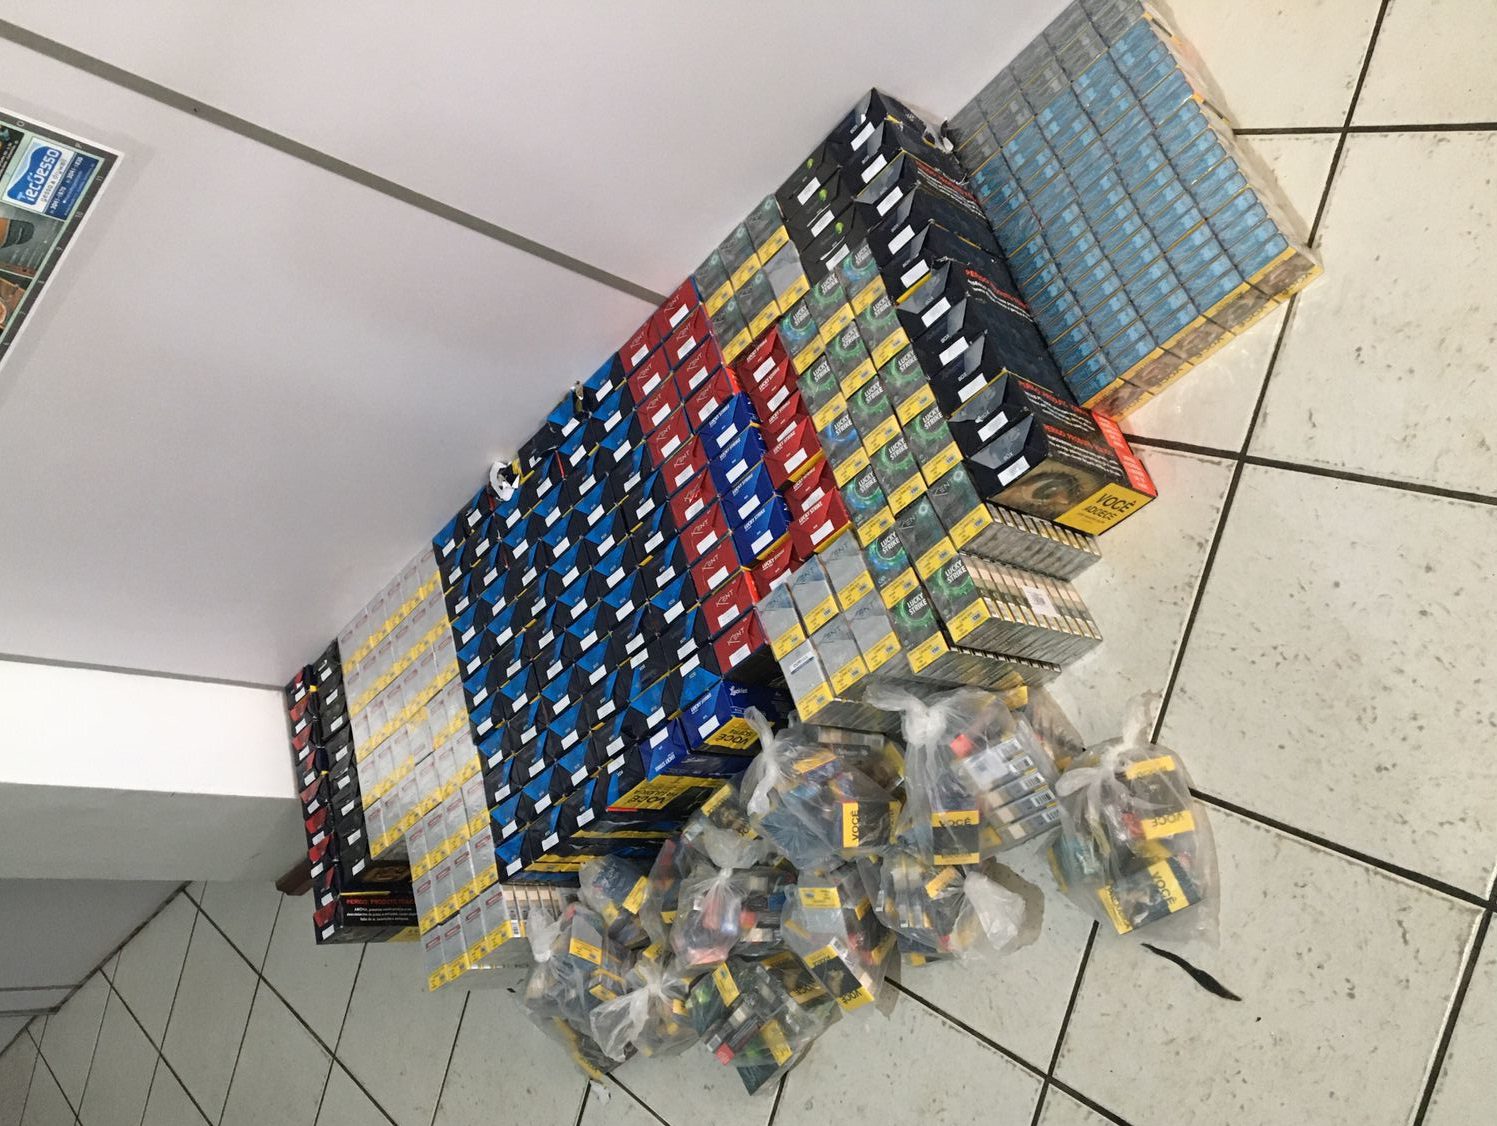 BM prende trio por roubo a carga e apreende mais de 2 mil carteiras de cigarro em Cachoeirinha